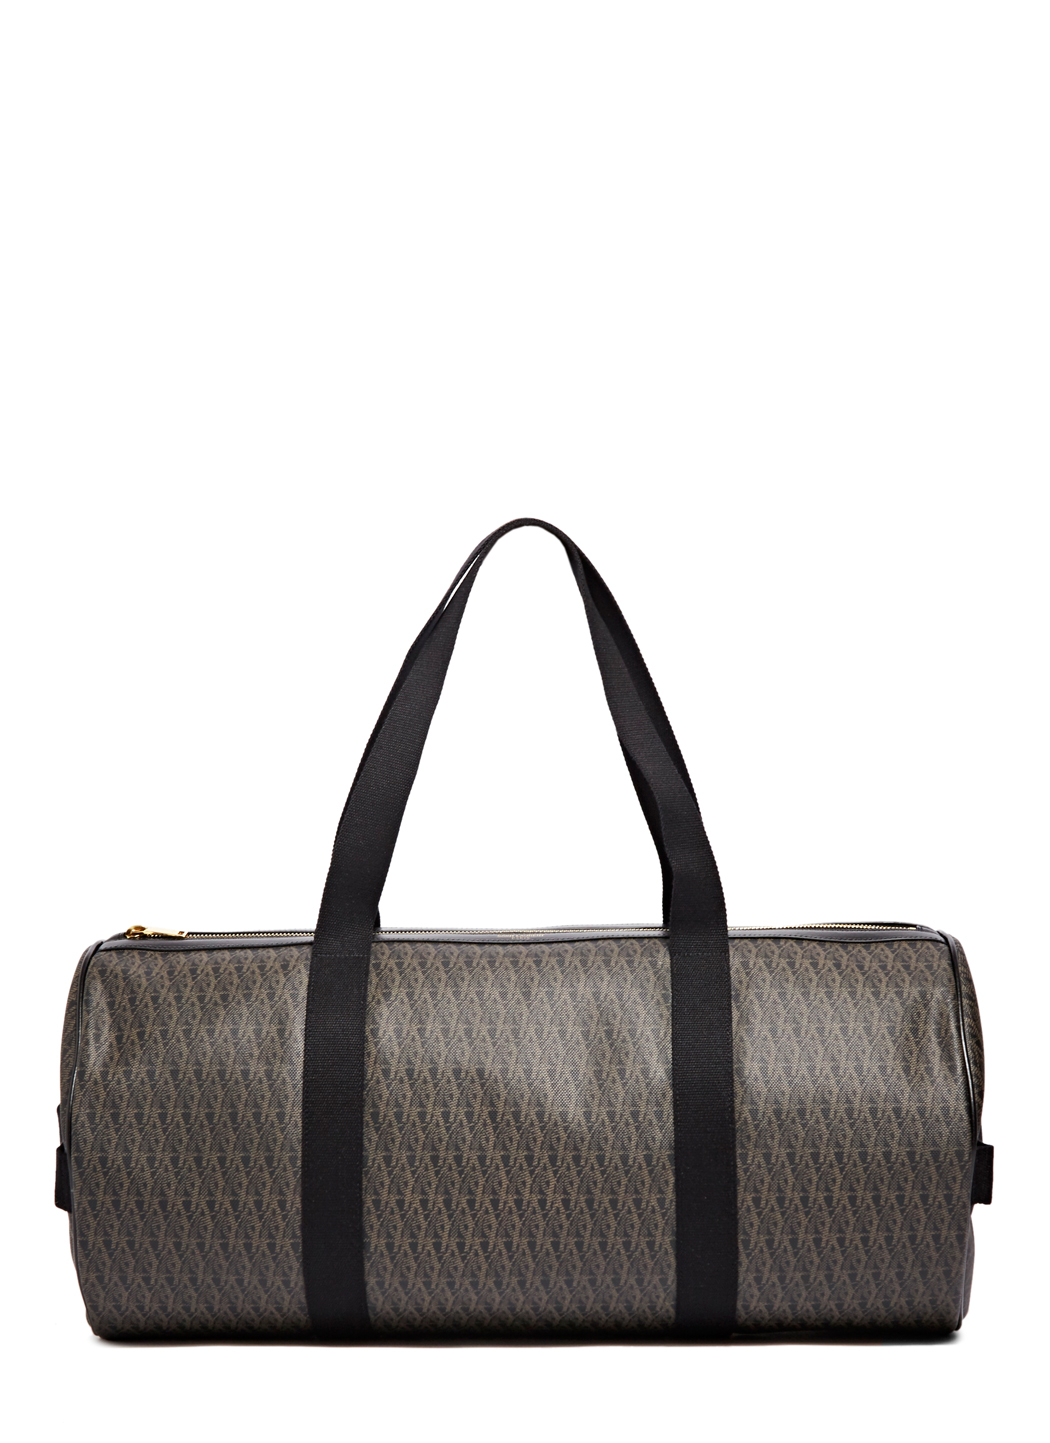 Saint Laurent Monogram Duffle Bag in Brown for Men - Lyst